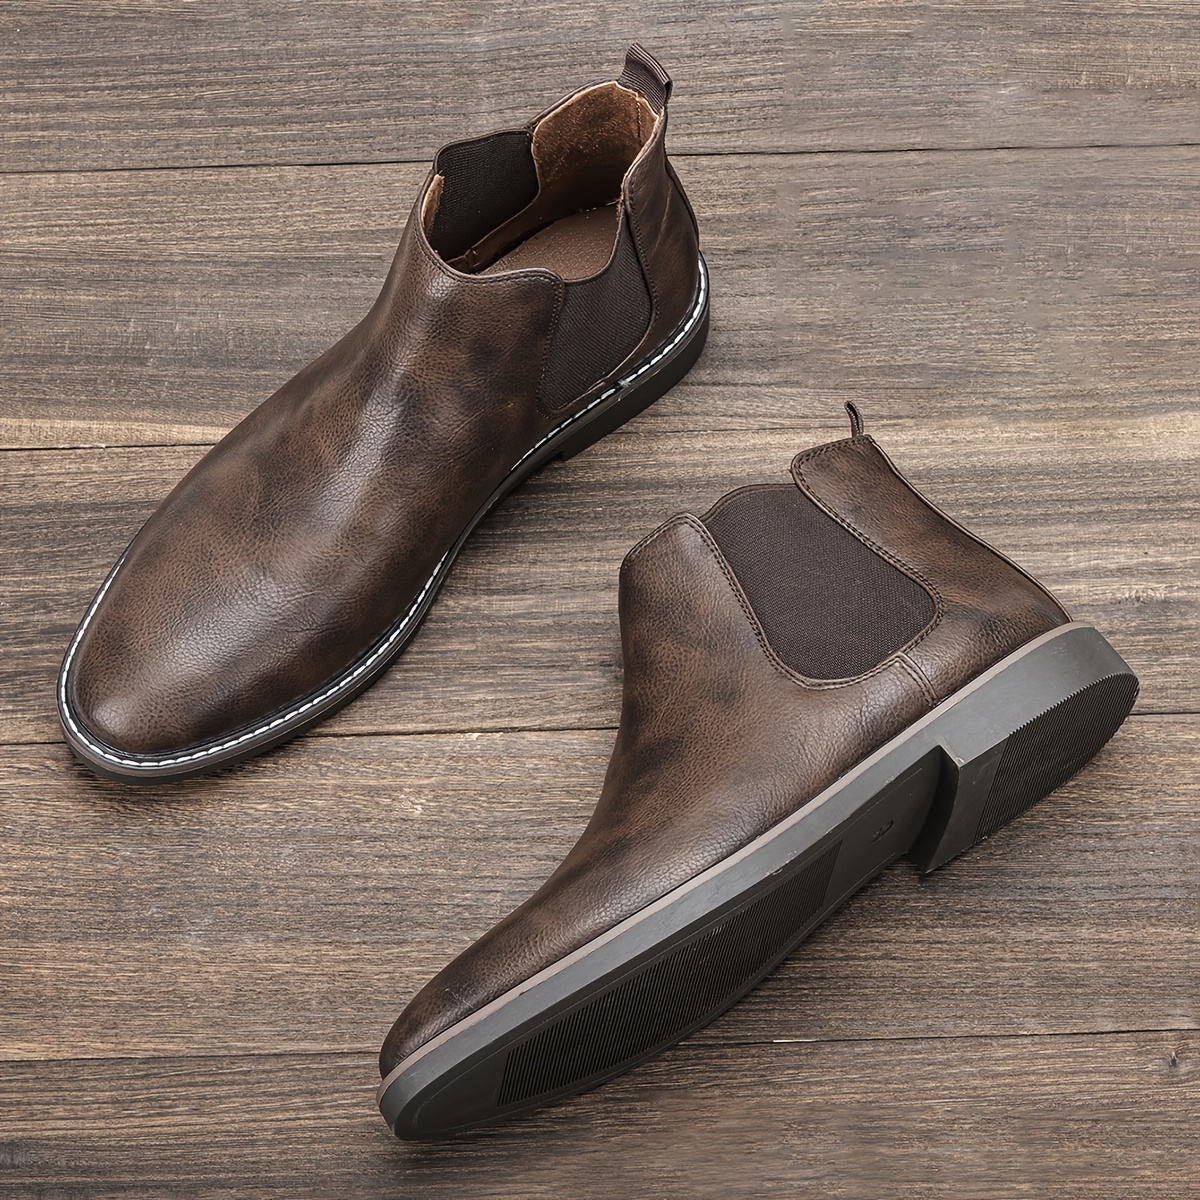 men vintage leather shoes